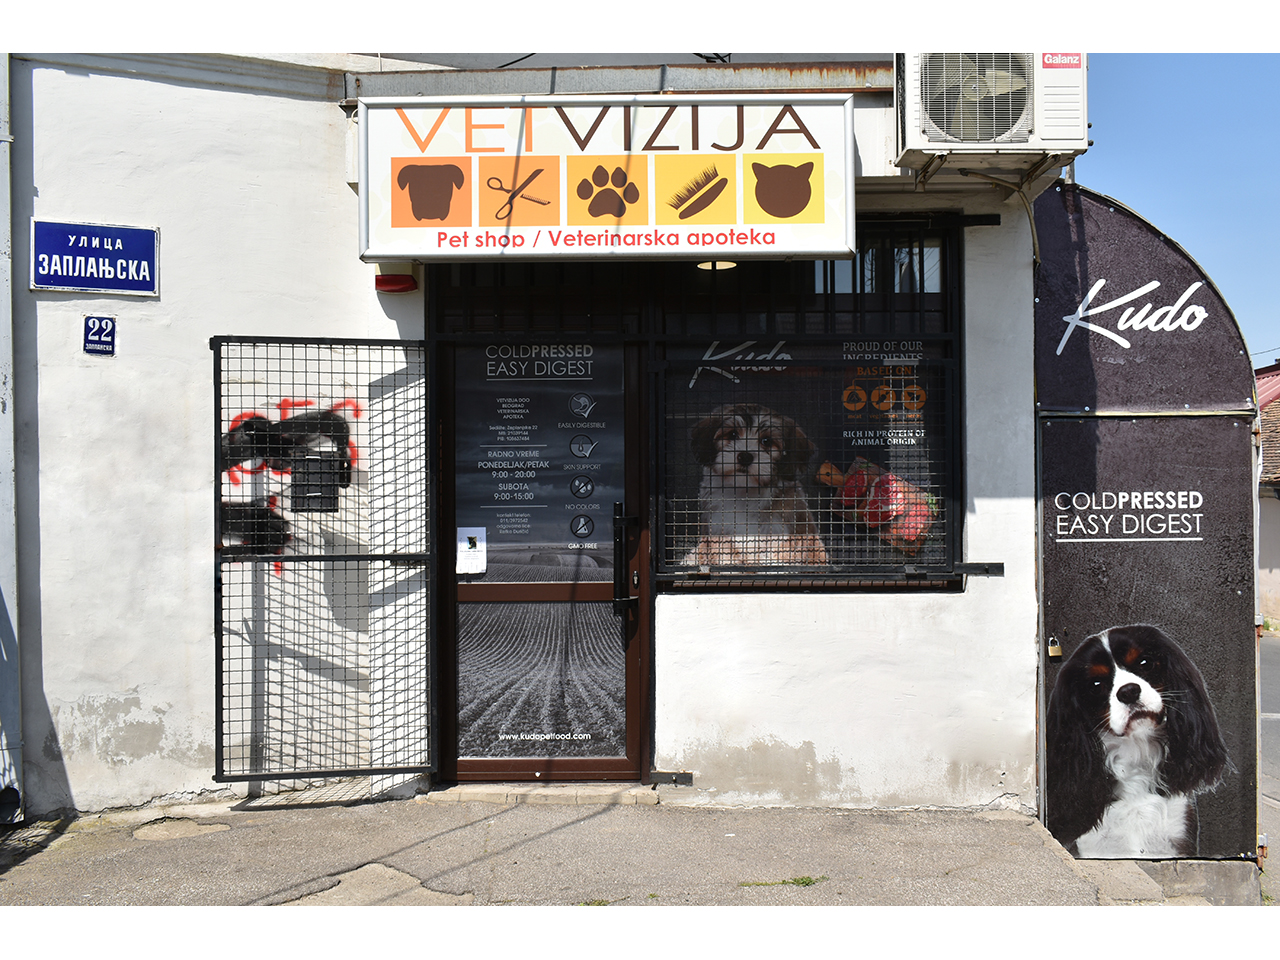 Slika 8 - VETVIZIJA - VETERINARSKA ORDINACIJA I GROOMING - VETERINARSKA APOTEKA I PET SHOP Kućni ljubimci, pet shop Beograd